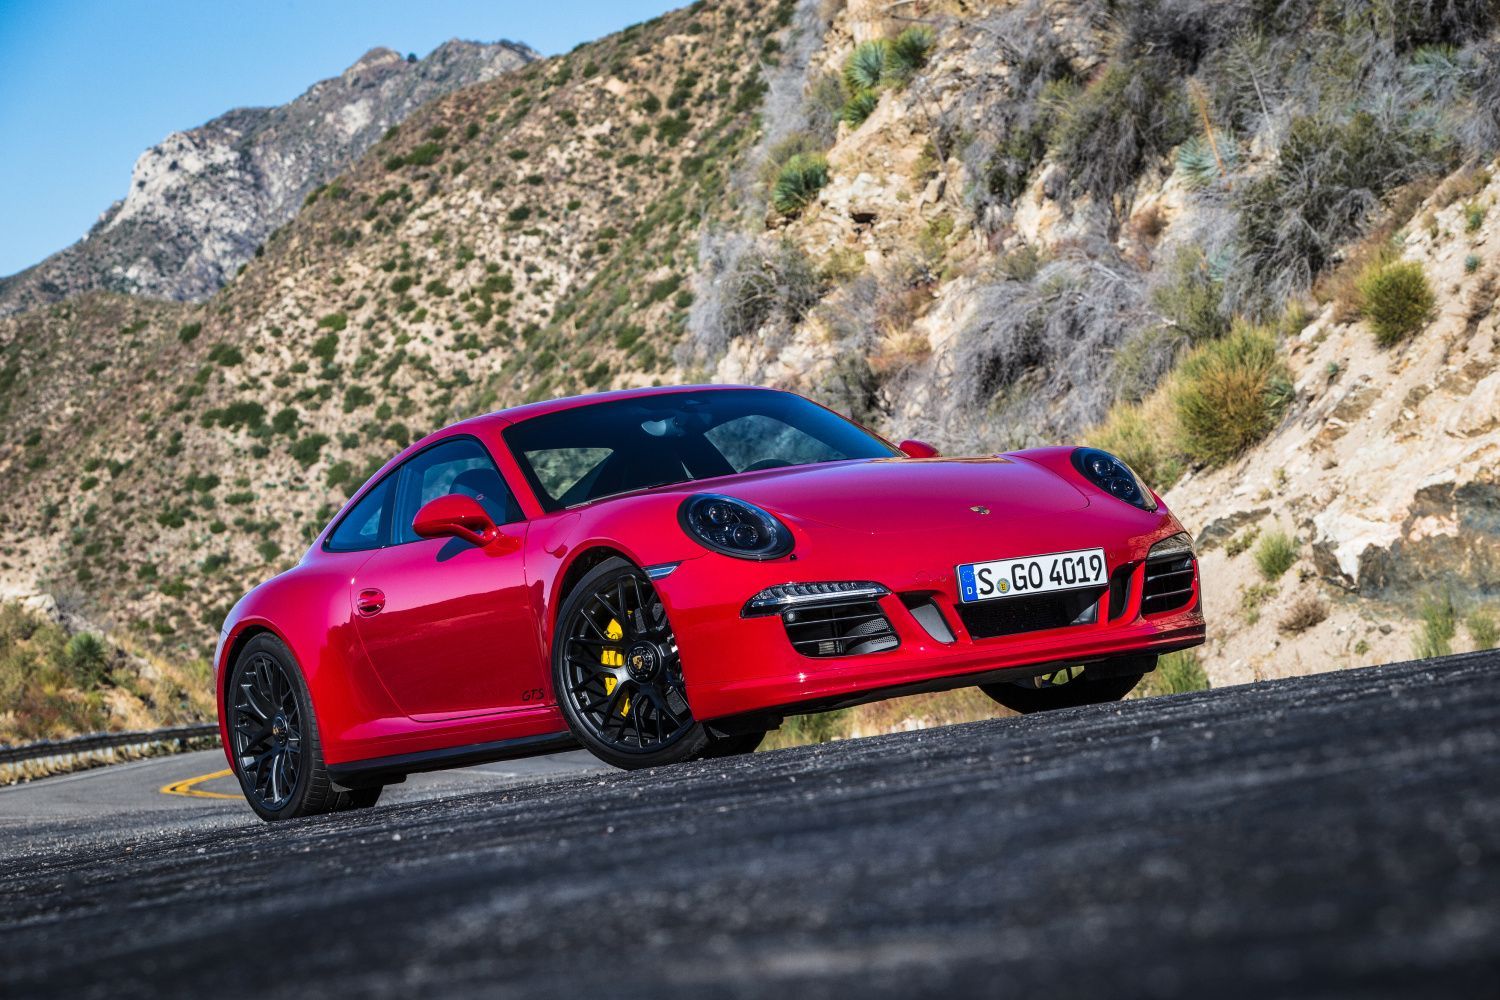 Top auta fotbalistů: Porsche 911 GTS